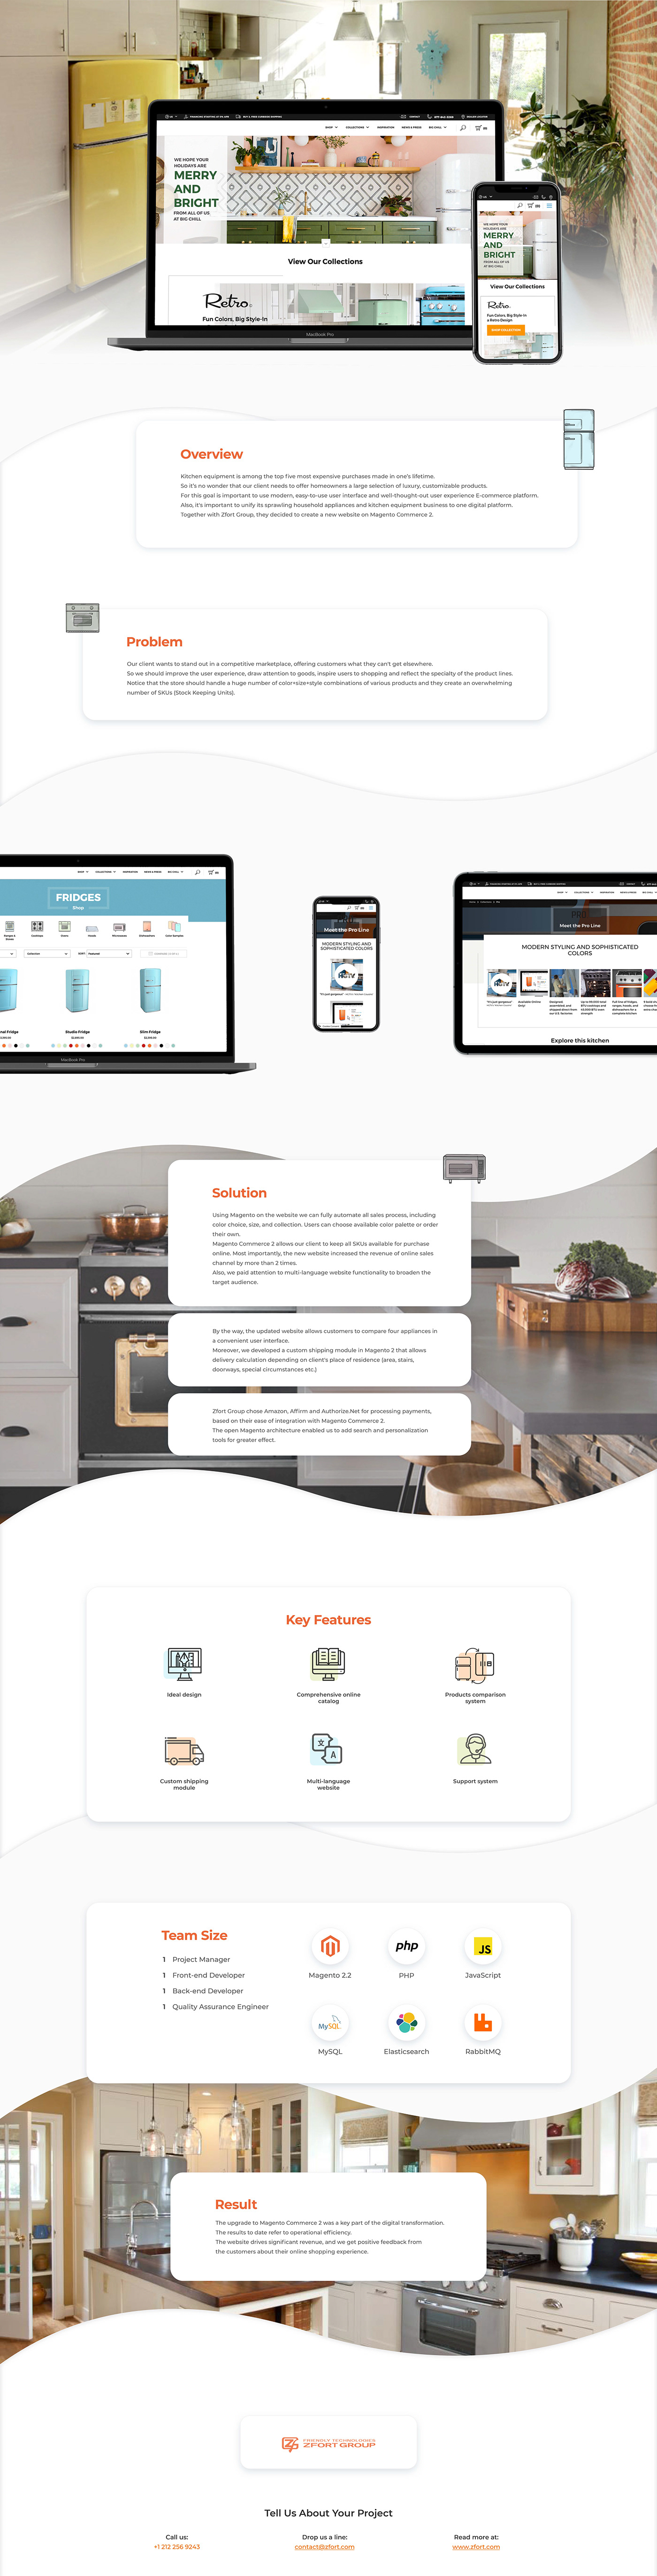 e-commerce Ecommerce online store Website Design UI/UX web development  design magento Shopping online shopping